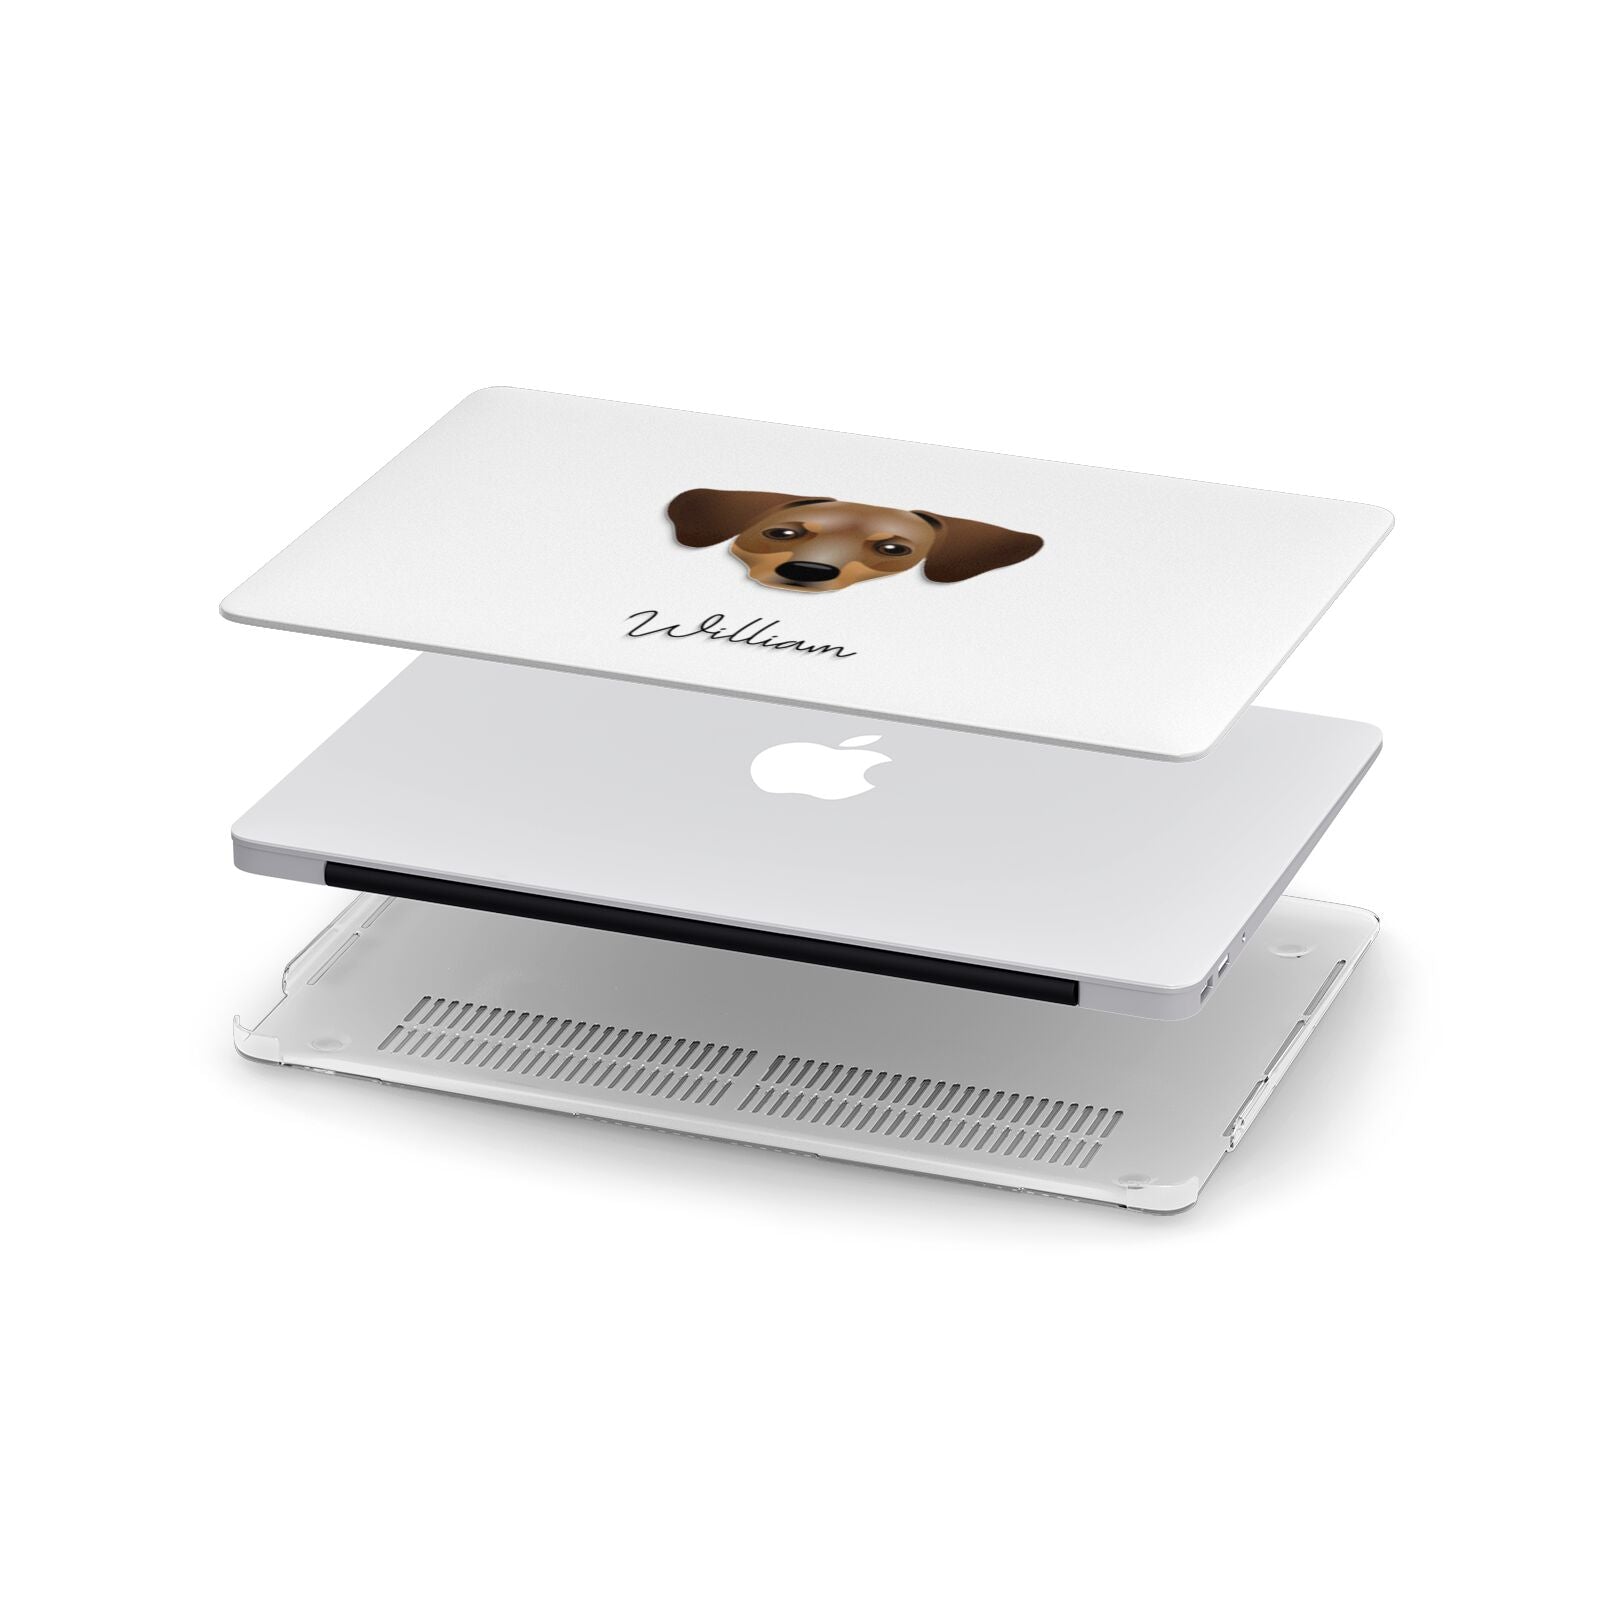 Chiweenie Personalised Apple MacBook Case in Detail